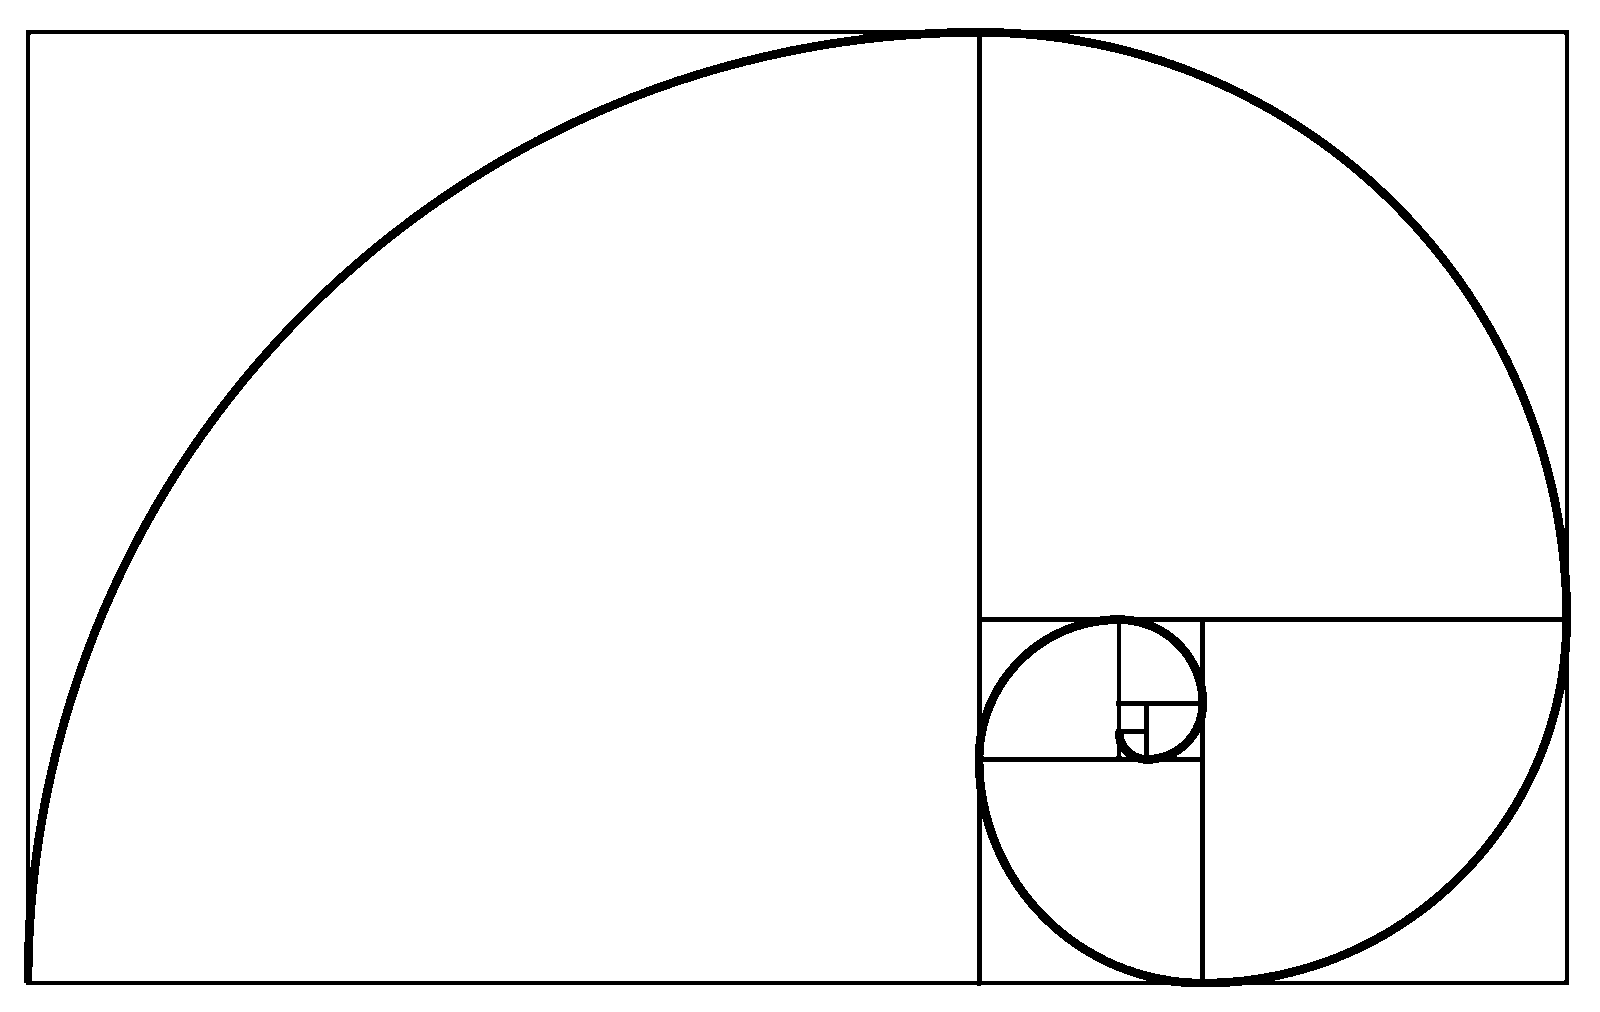 Lección sobre los números de Fibonacci, la sección de oro, la